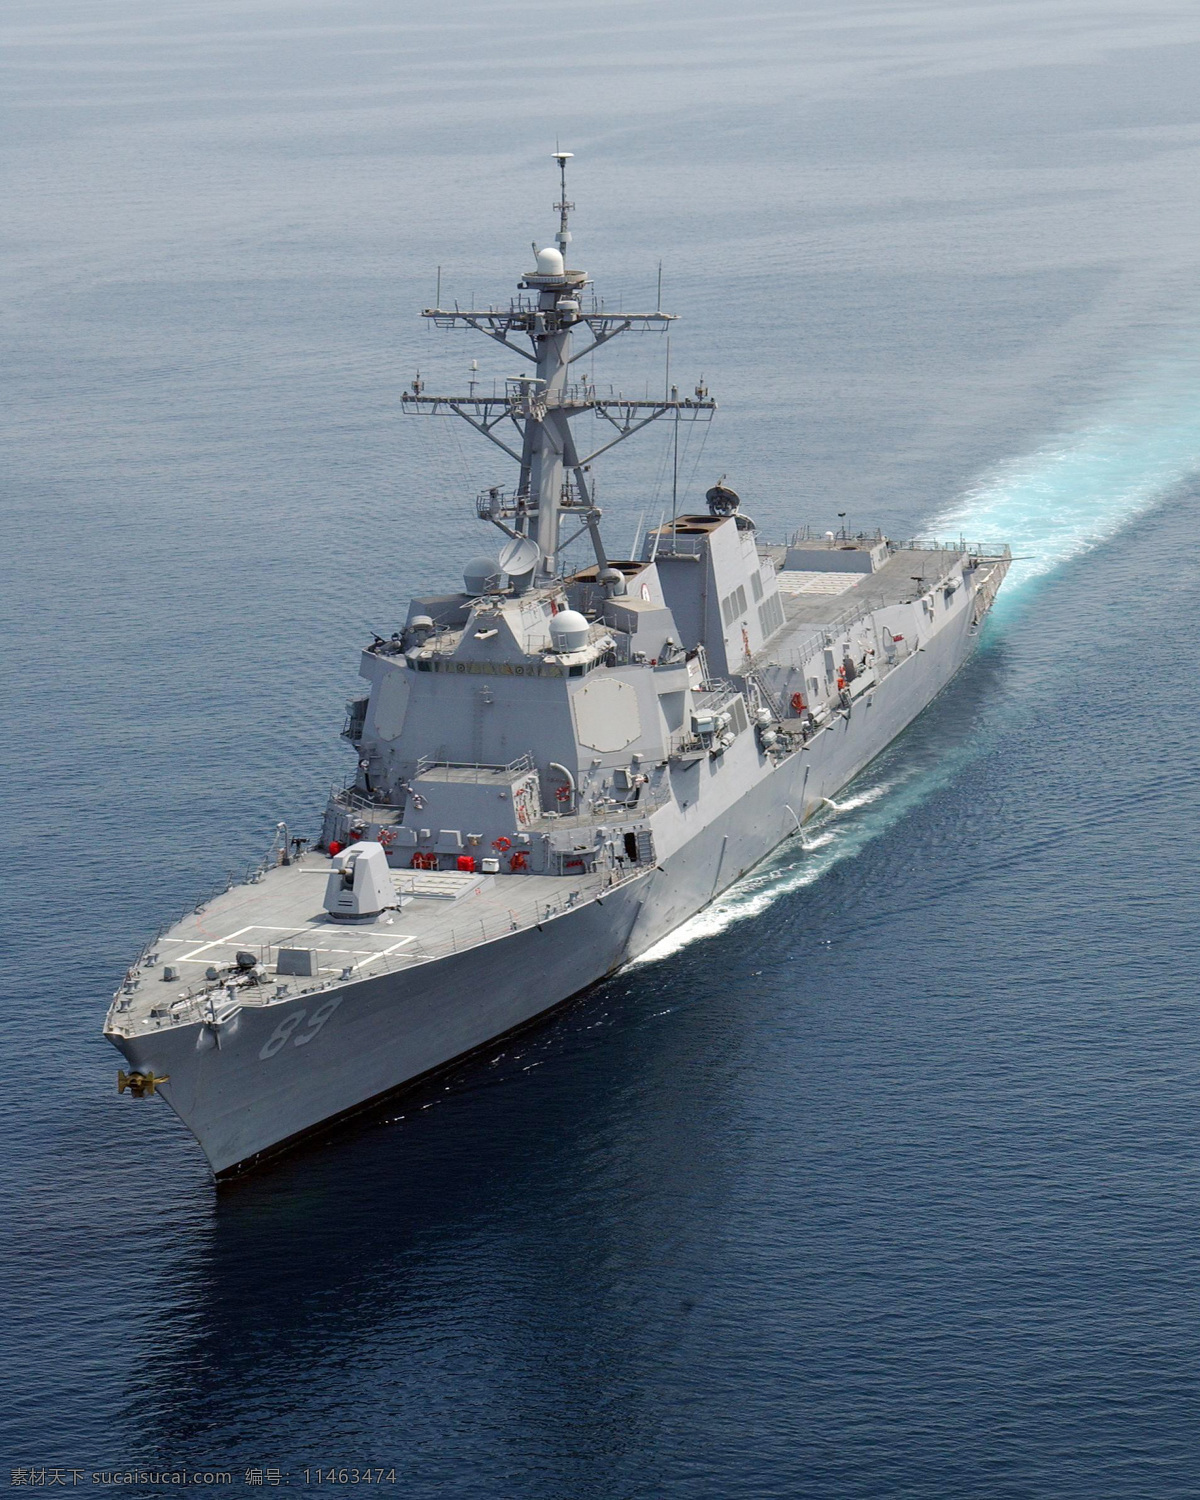 驱逐舰 护卫舰 海军 舰艇 大海 军事 军舰 军事武器 现代科技